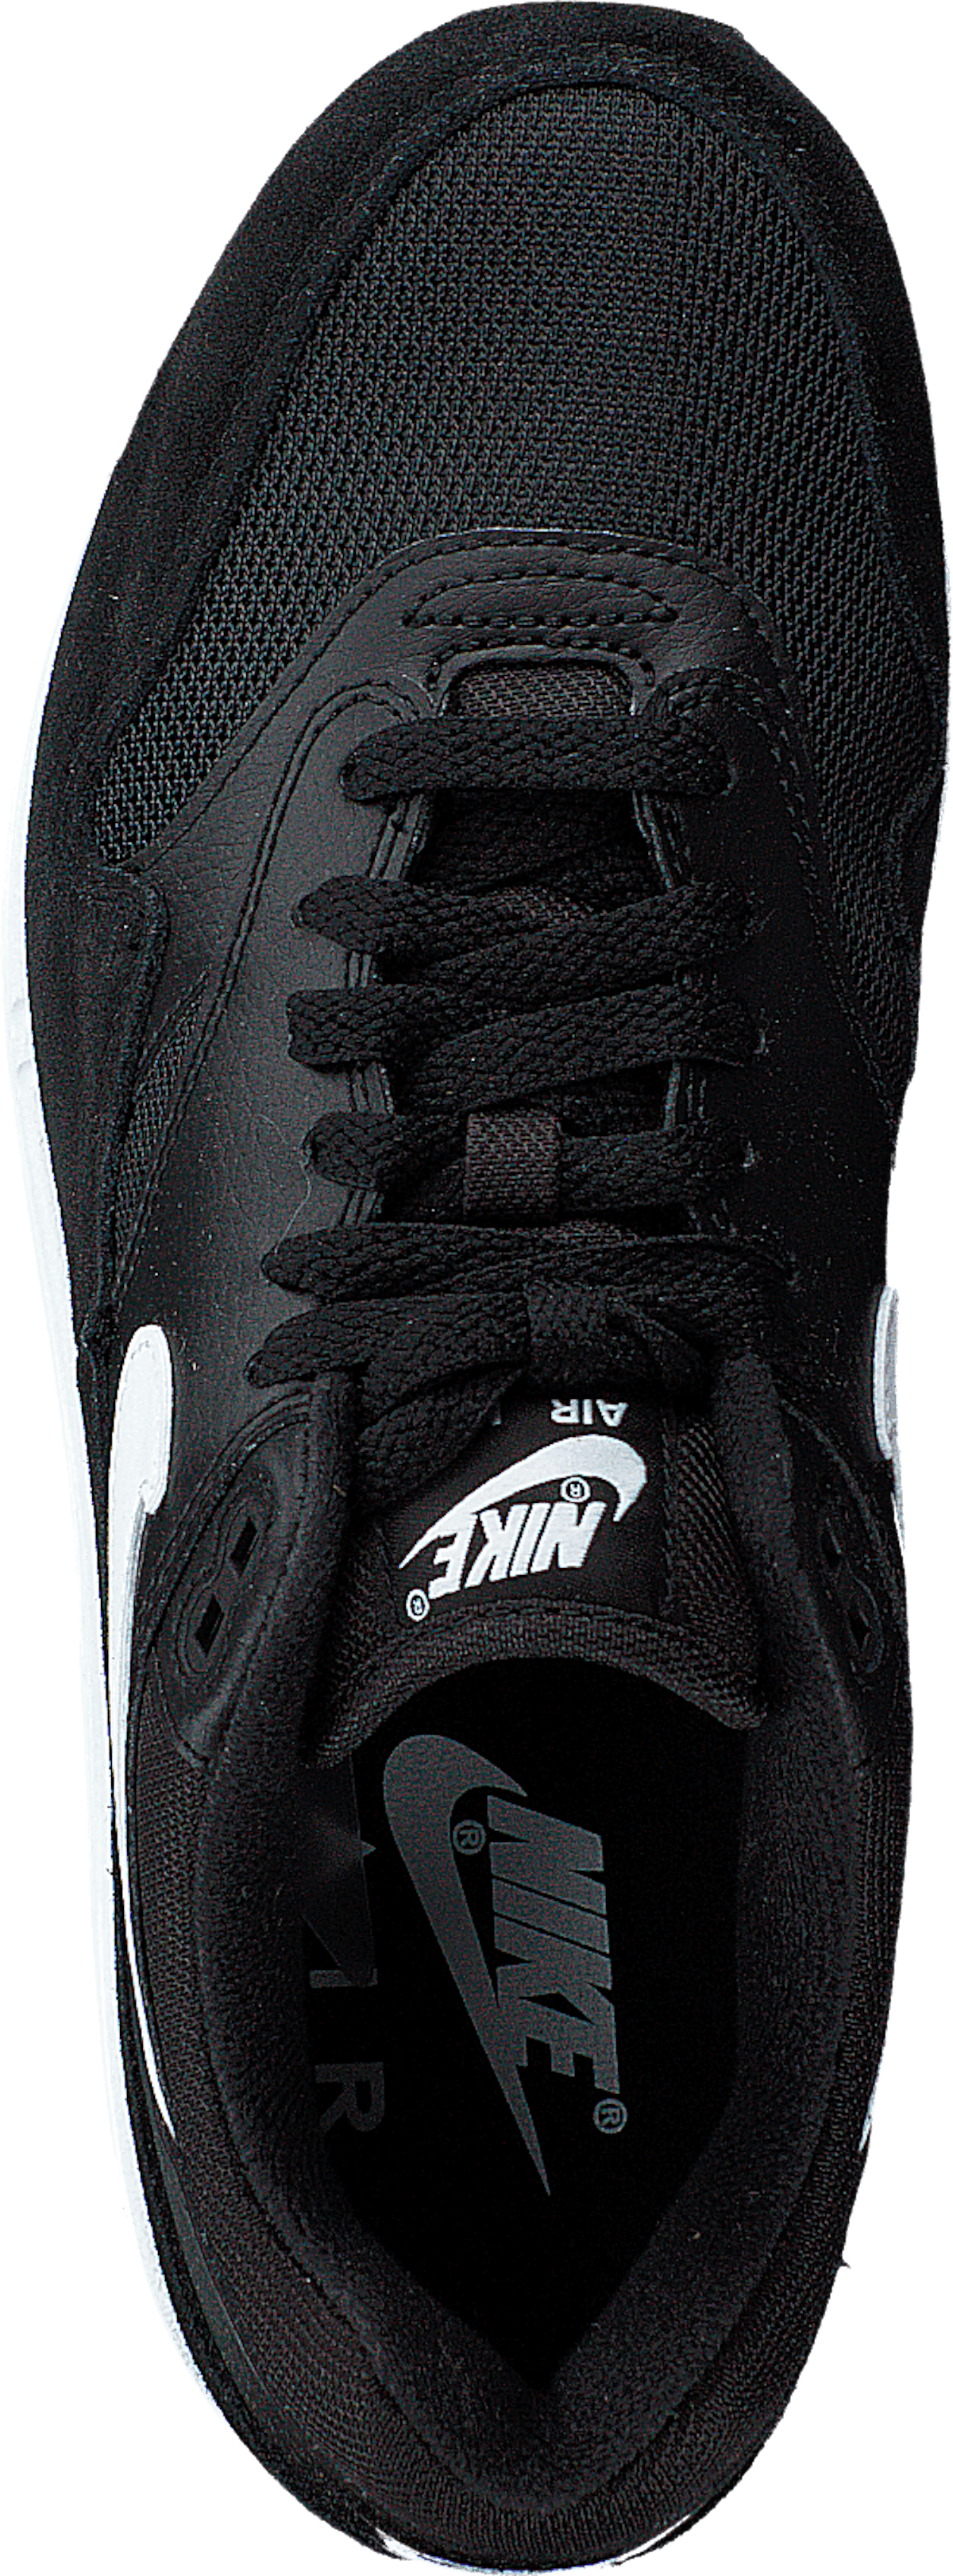 Air Max 1 Shoe Black/white